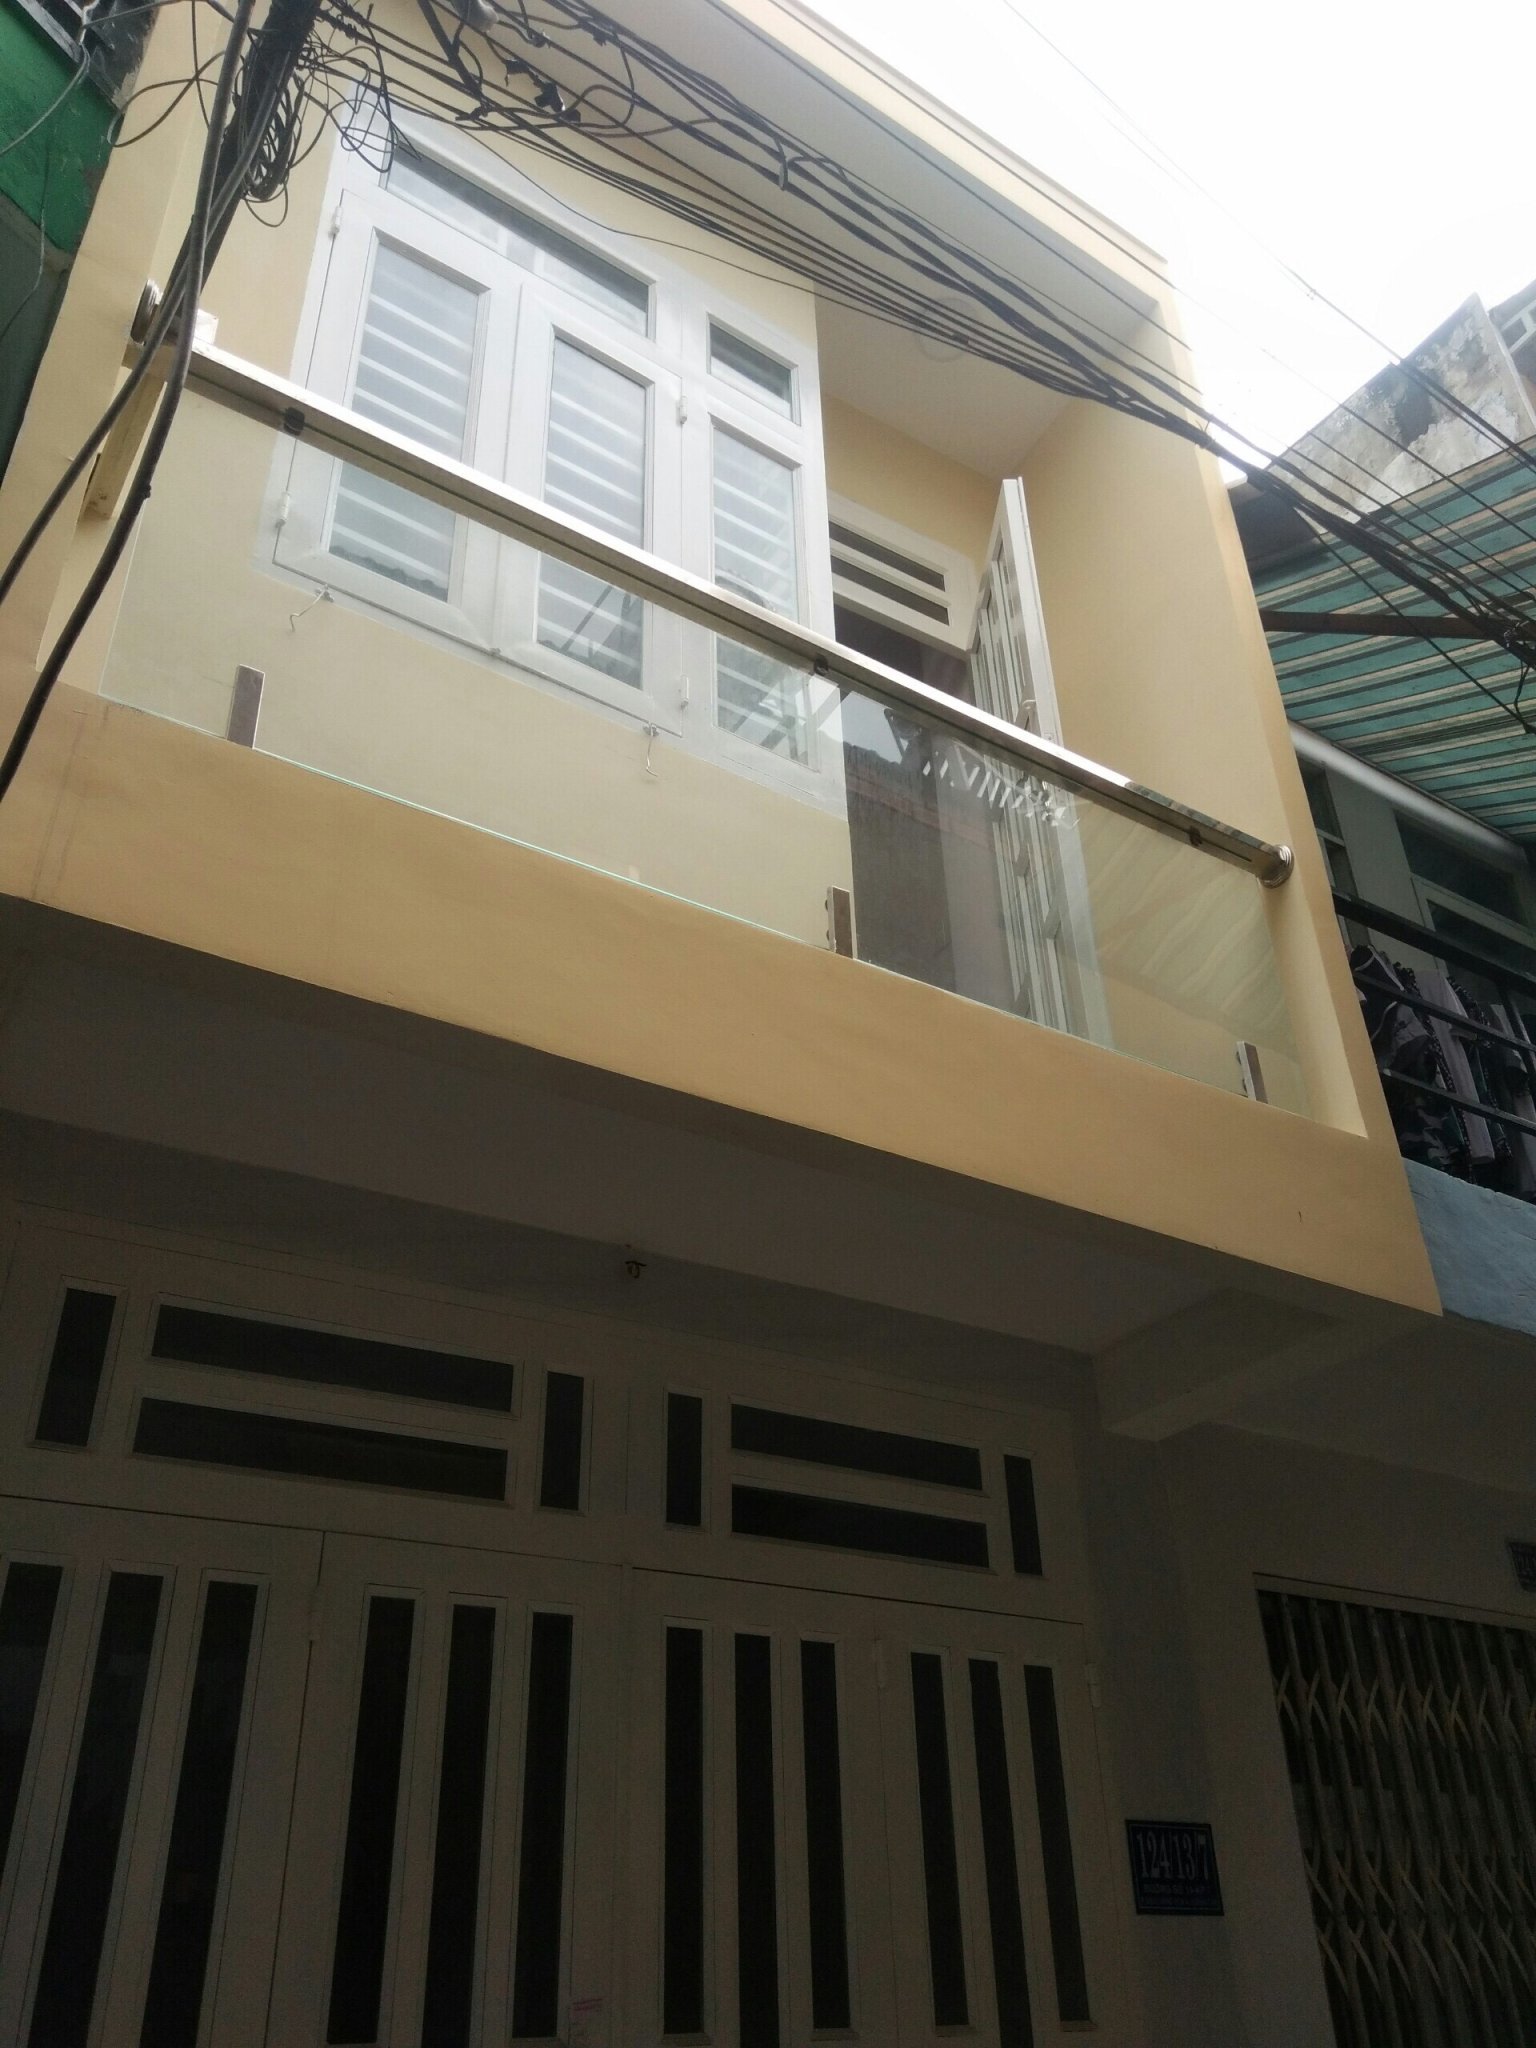 Chính chủ cần bán nhà tại 124/13/7 đường số 14, quận Bình Tân, T.P Hồ Chí Minh